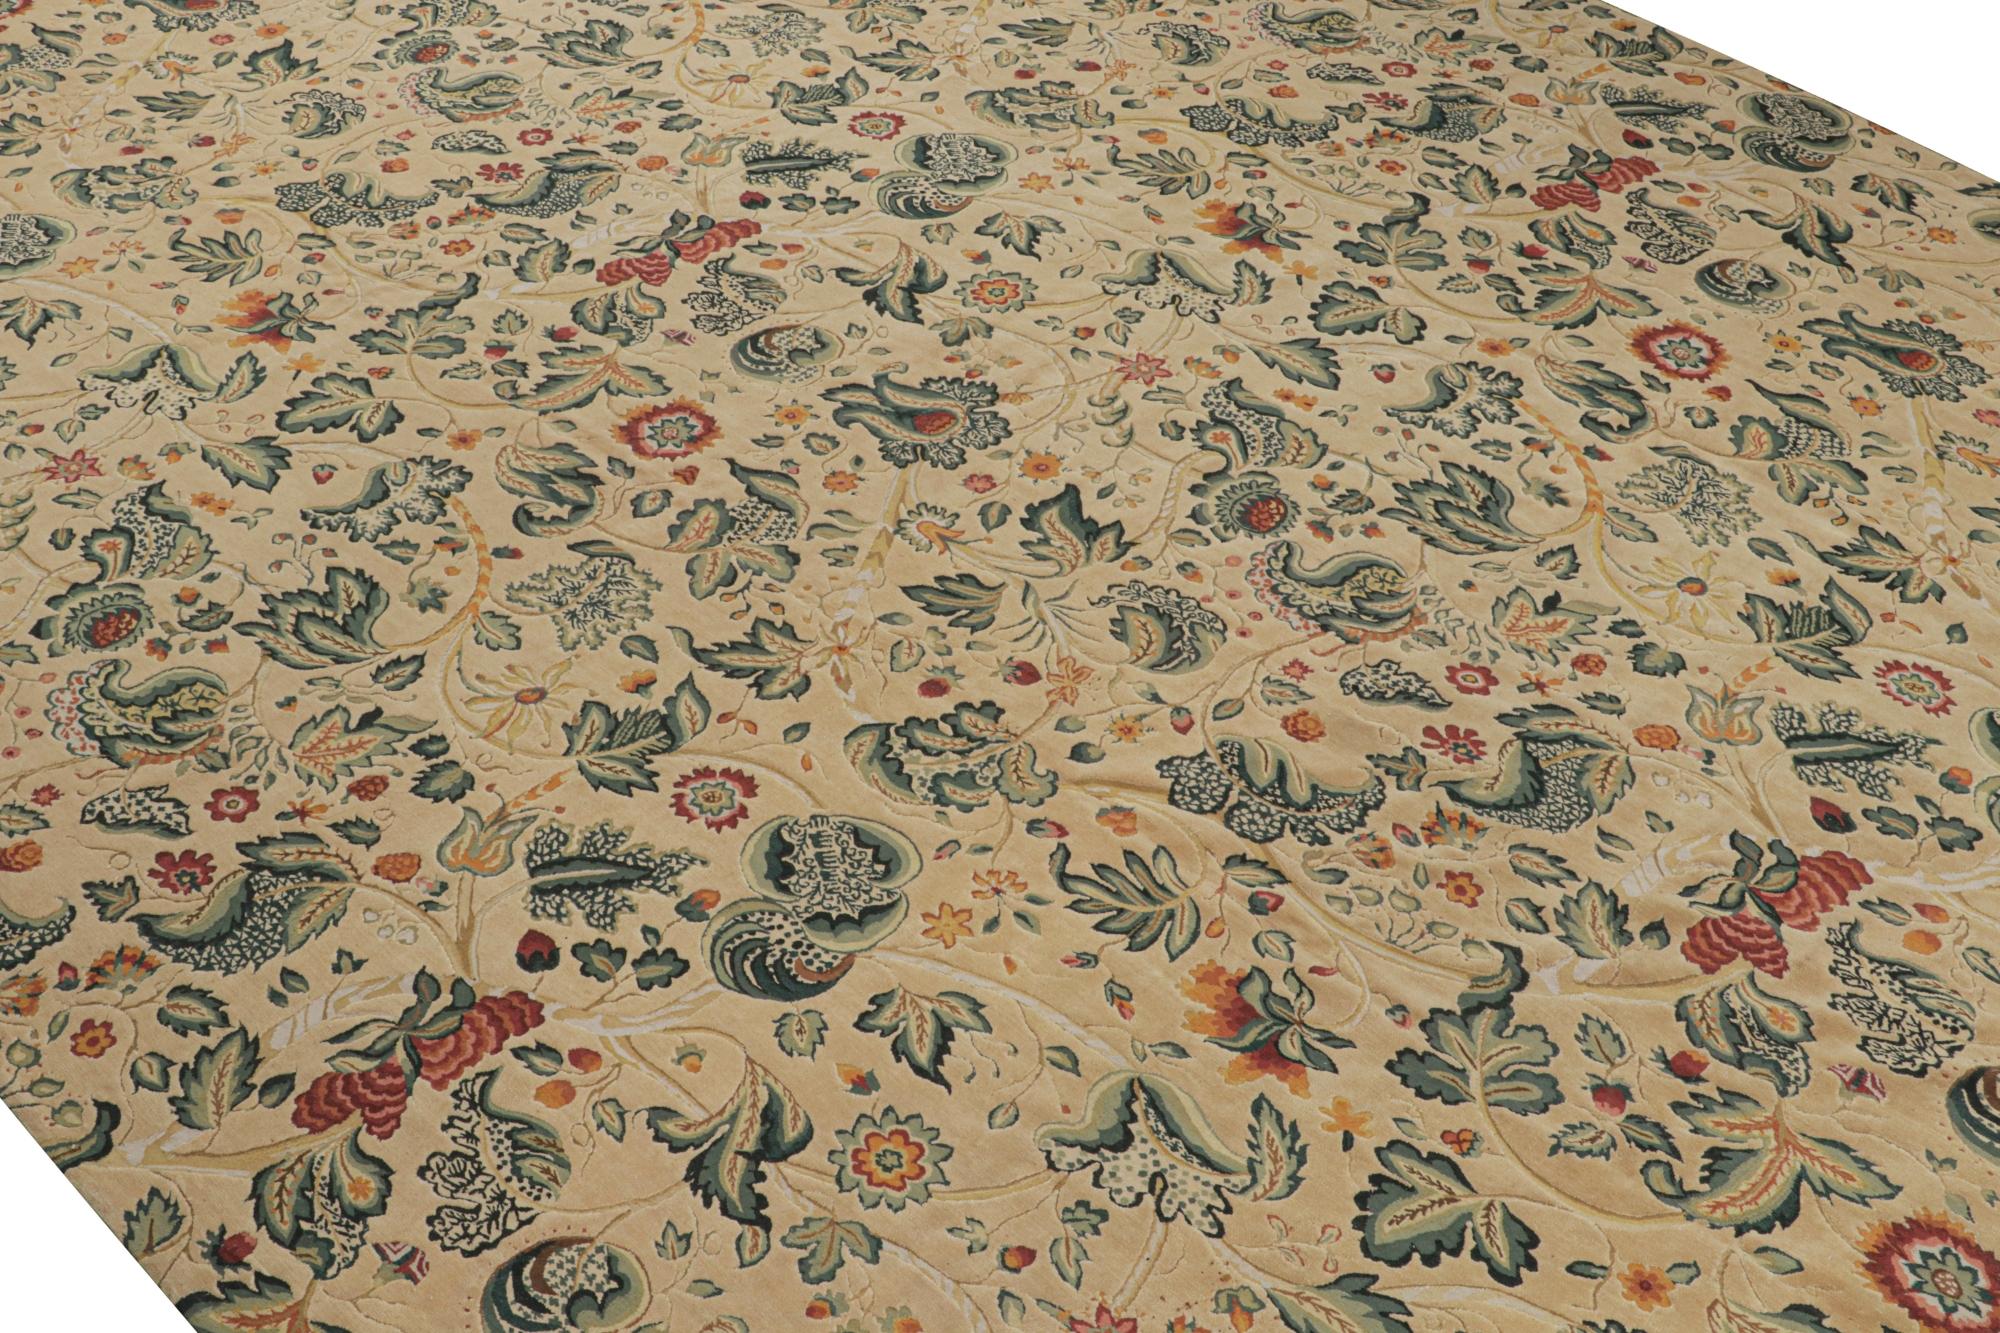 Ce tissage plat contemporain 13x19 s'inspire des tapis et tapisseries Tudor du XVIIIe siècle. Il fait partie de la Collection européenne de Rug & Kilim. 

Sur le Design : 

Tissé à la main en laine, ce modèle marque la première adaptation de ce